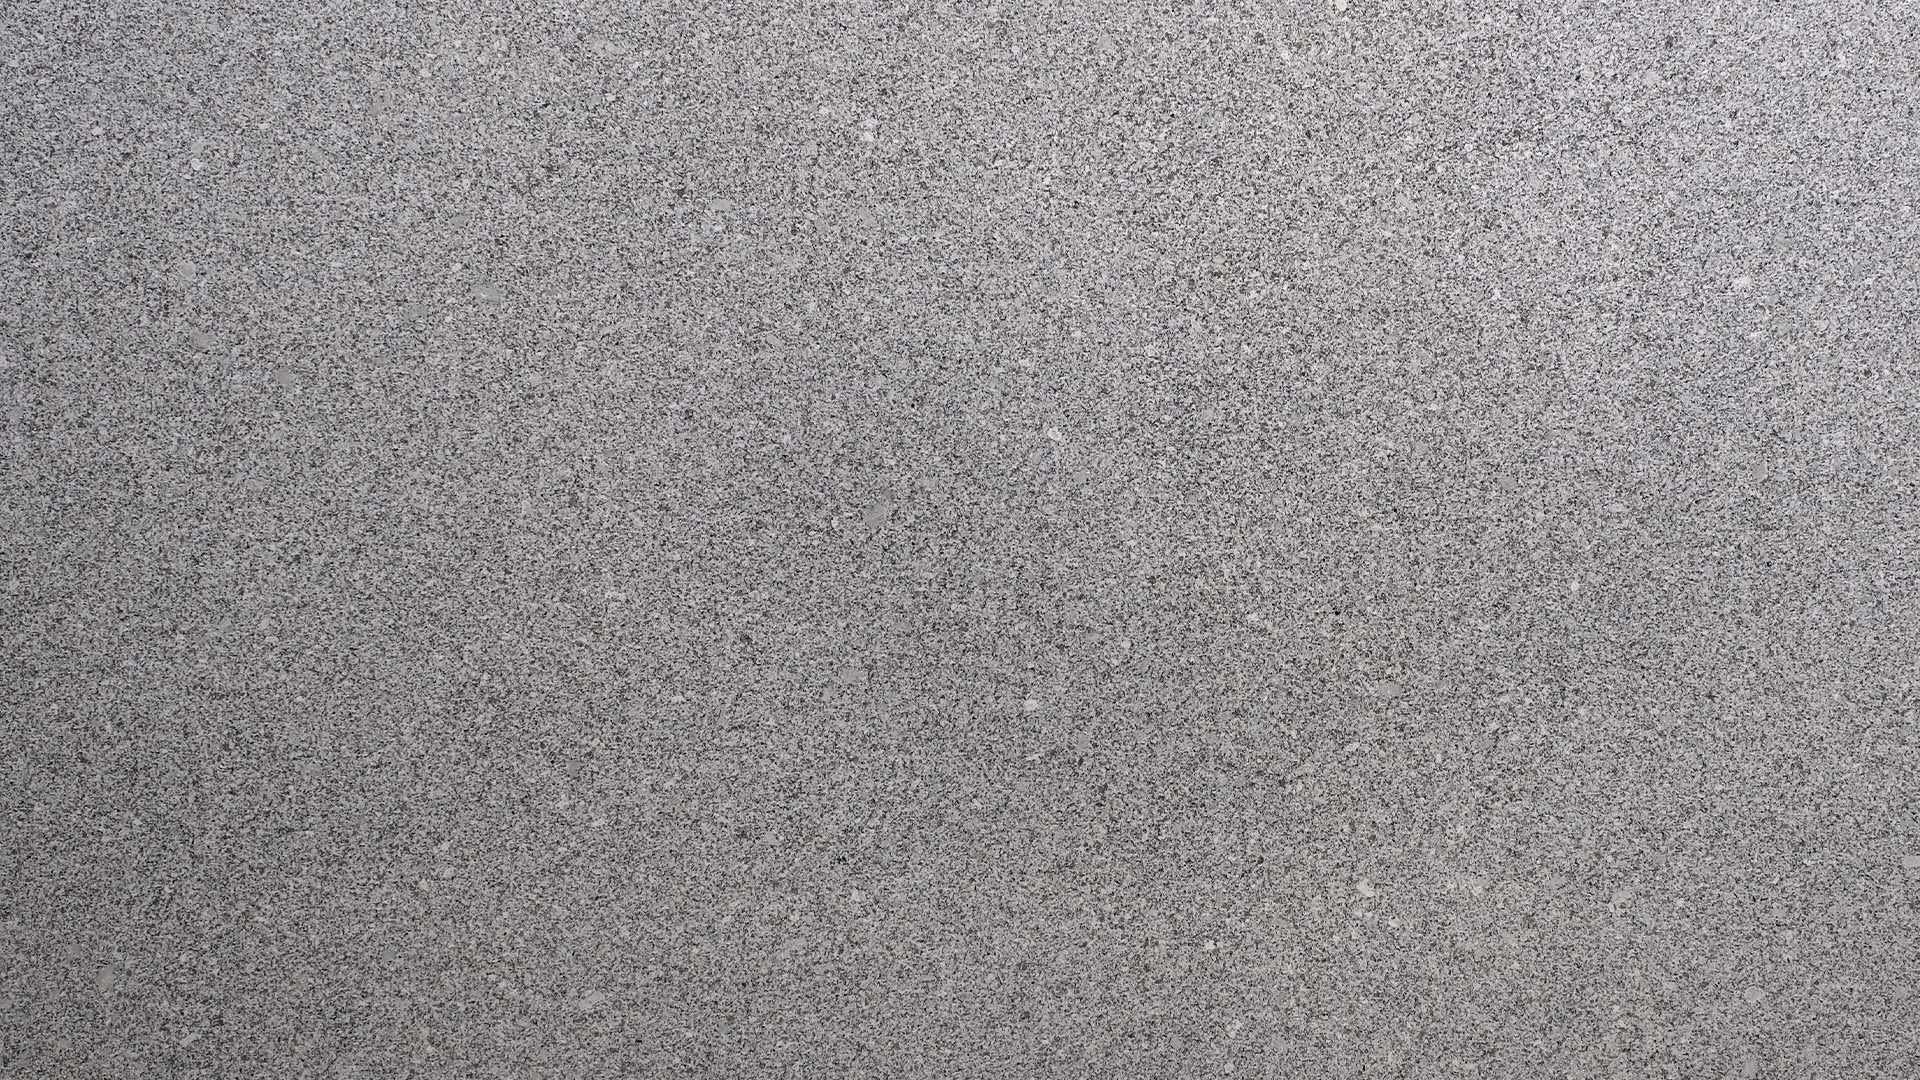 Naturstein Küchenarbeitsplatte mit weißer Grundfarbe im matten leather look mit grundsätzlich feiner Struktur und schwarz-grauen Sprenklern in der Farbe Gamma White.